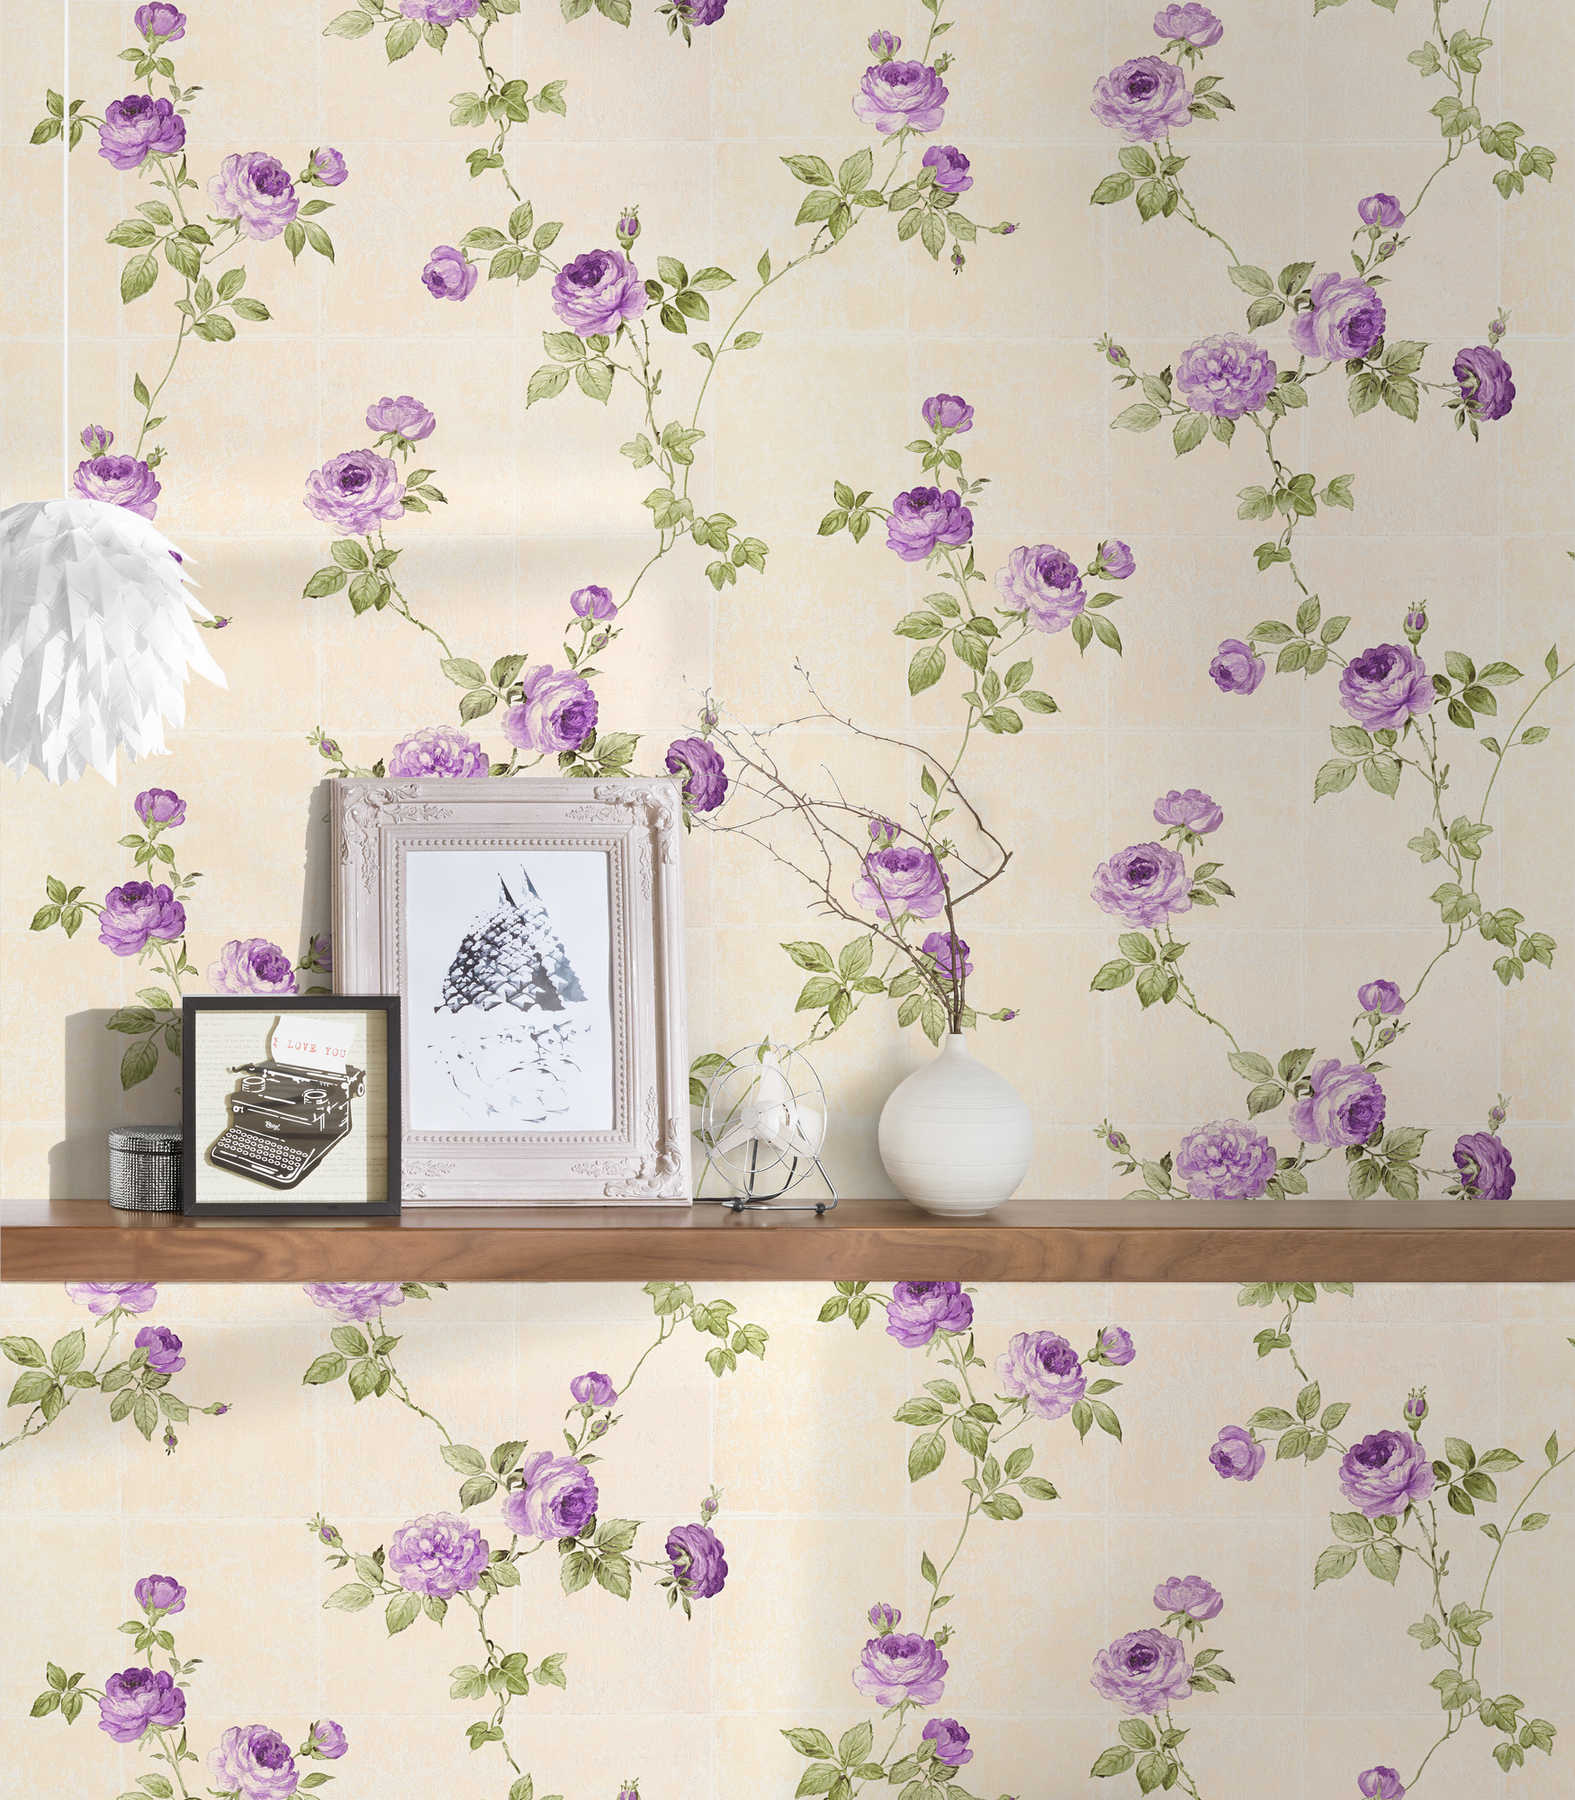             wallpaper roses vines & tile look - beige
        